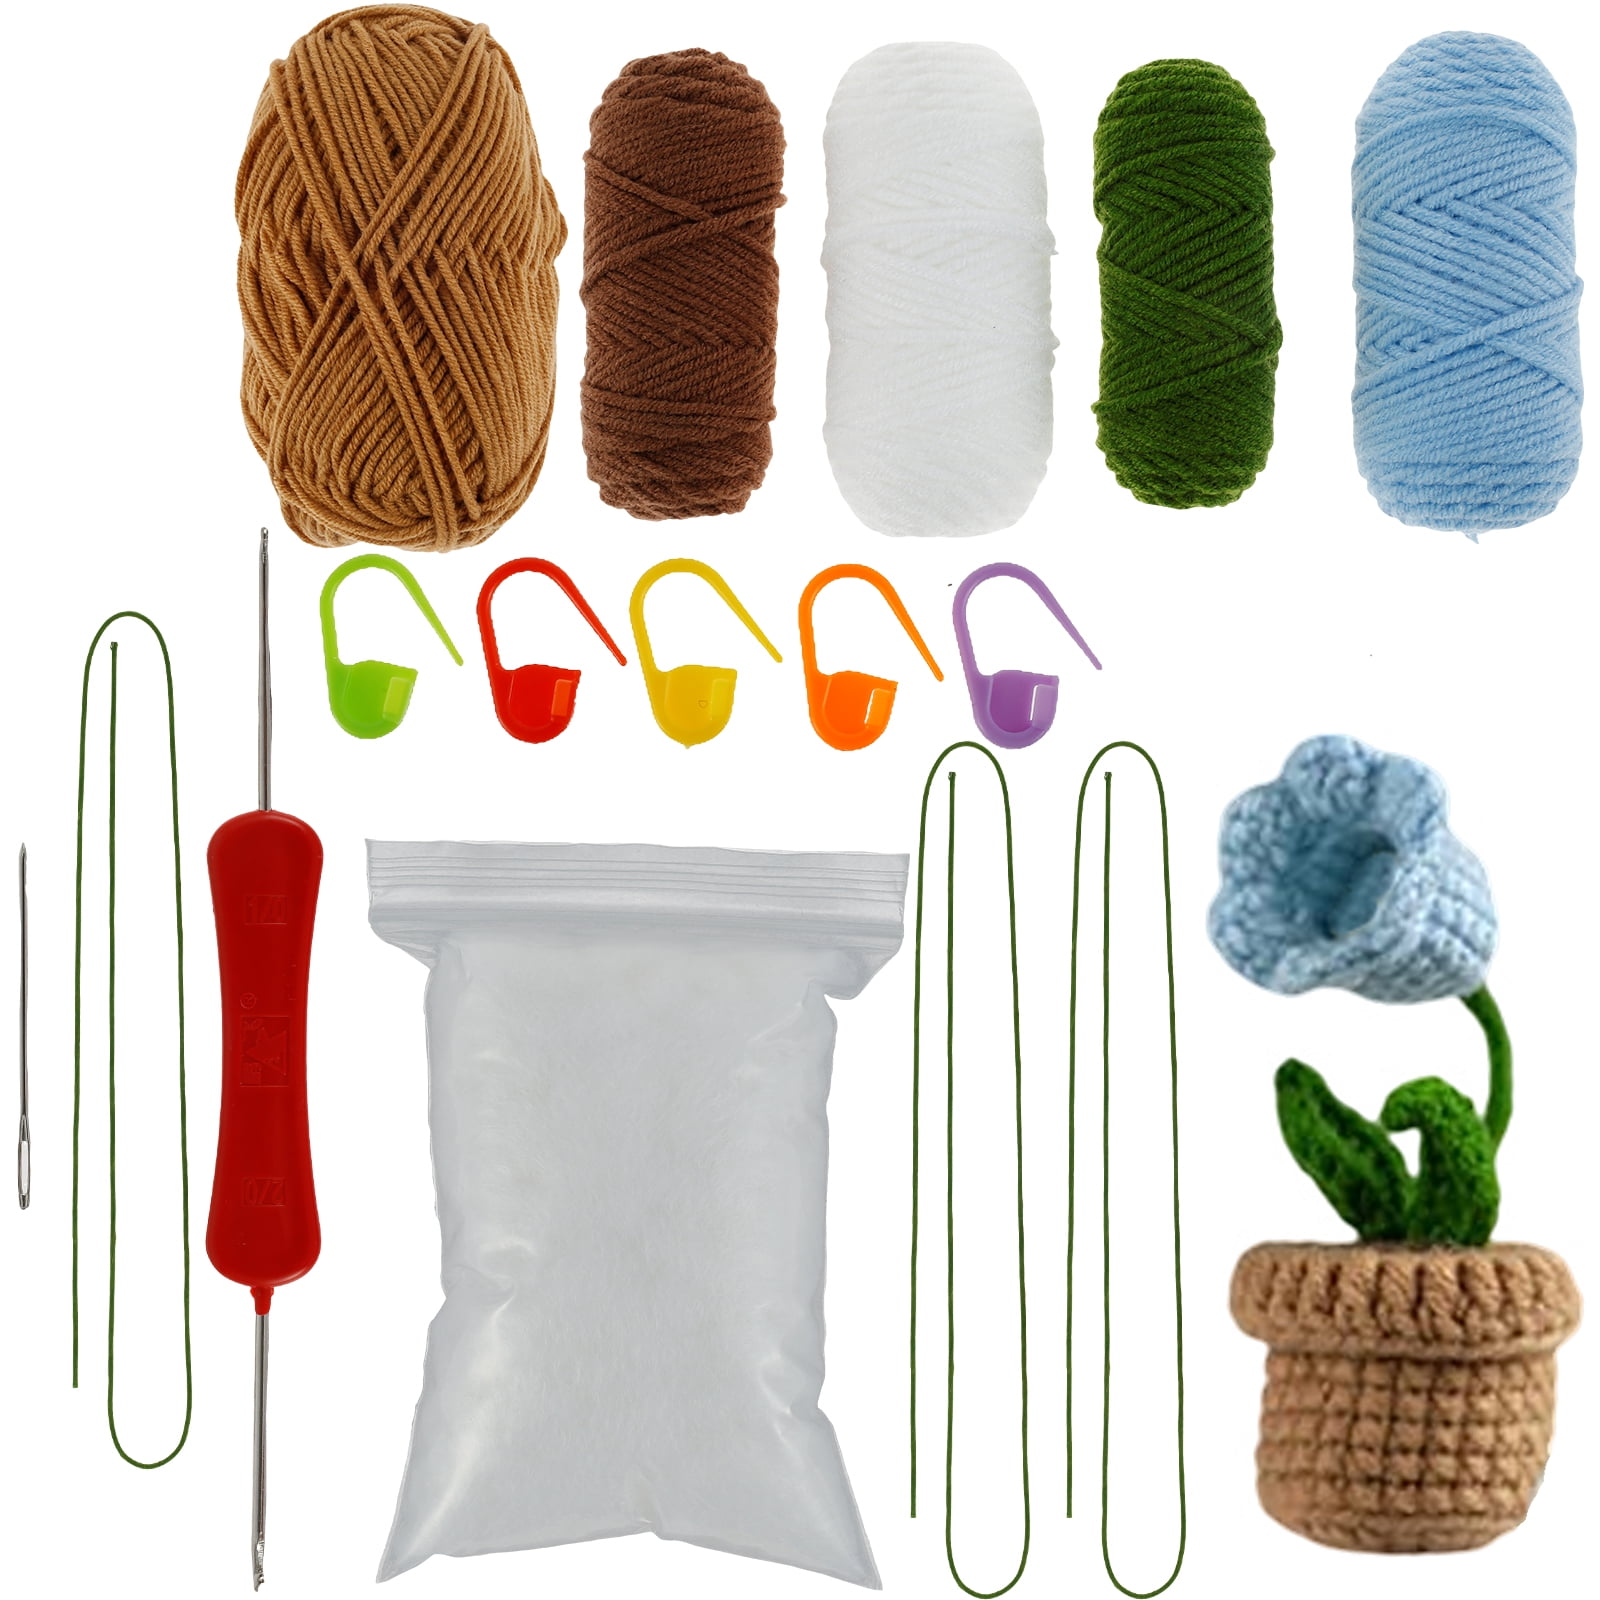  TEHAUX 4 Sets Crochet Bouquet Kit Fresh Flower Bouquet Tulip  Crochet Hook Crochet Kits Crochet Kit for Beginners Adults Knitting Kit  Suit DIY Kits Crochet Flower Yarn Animal Child